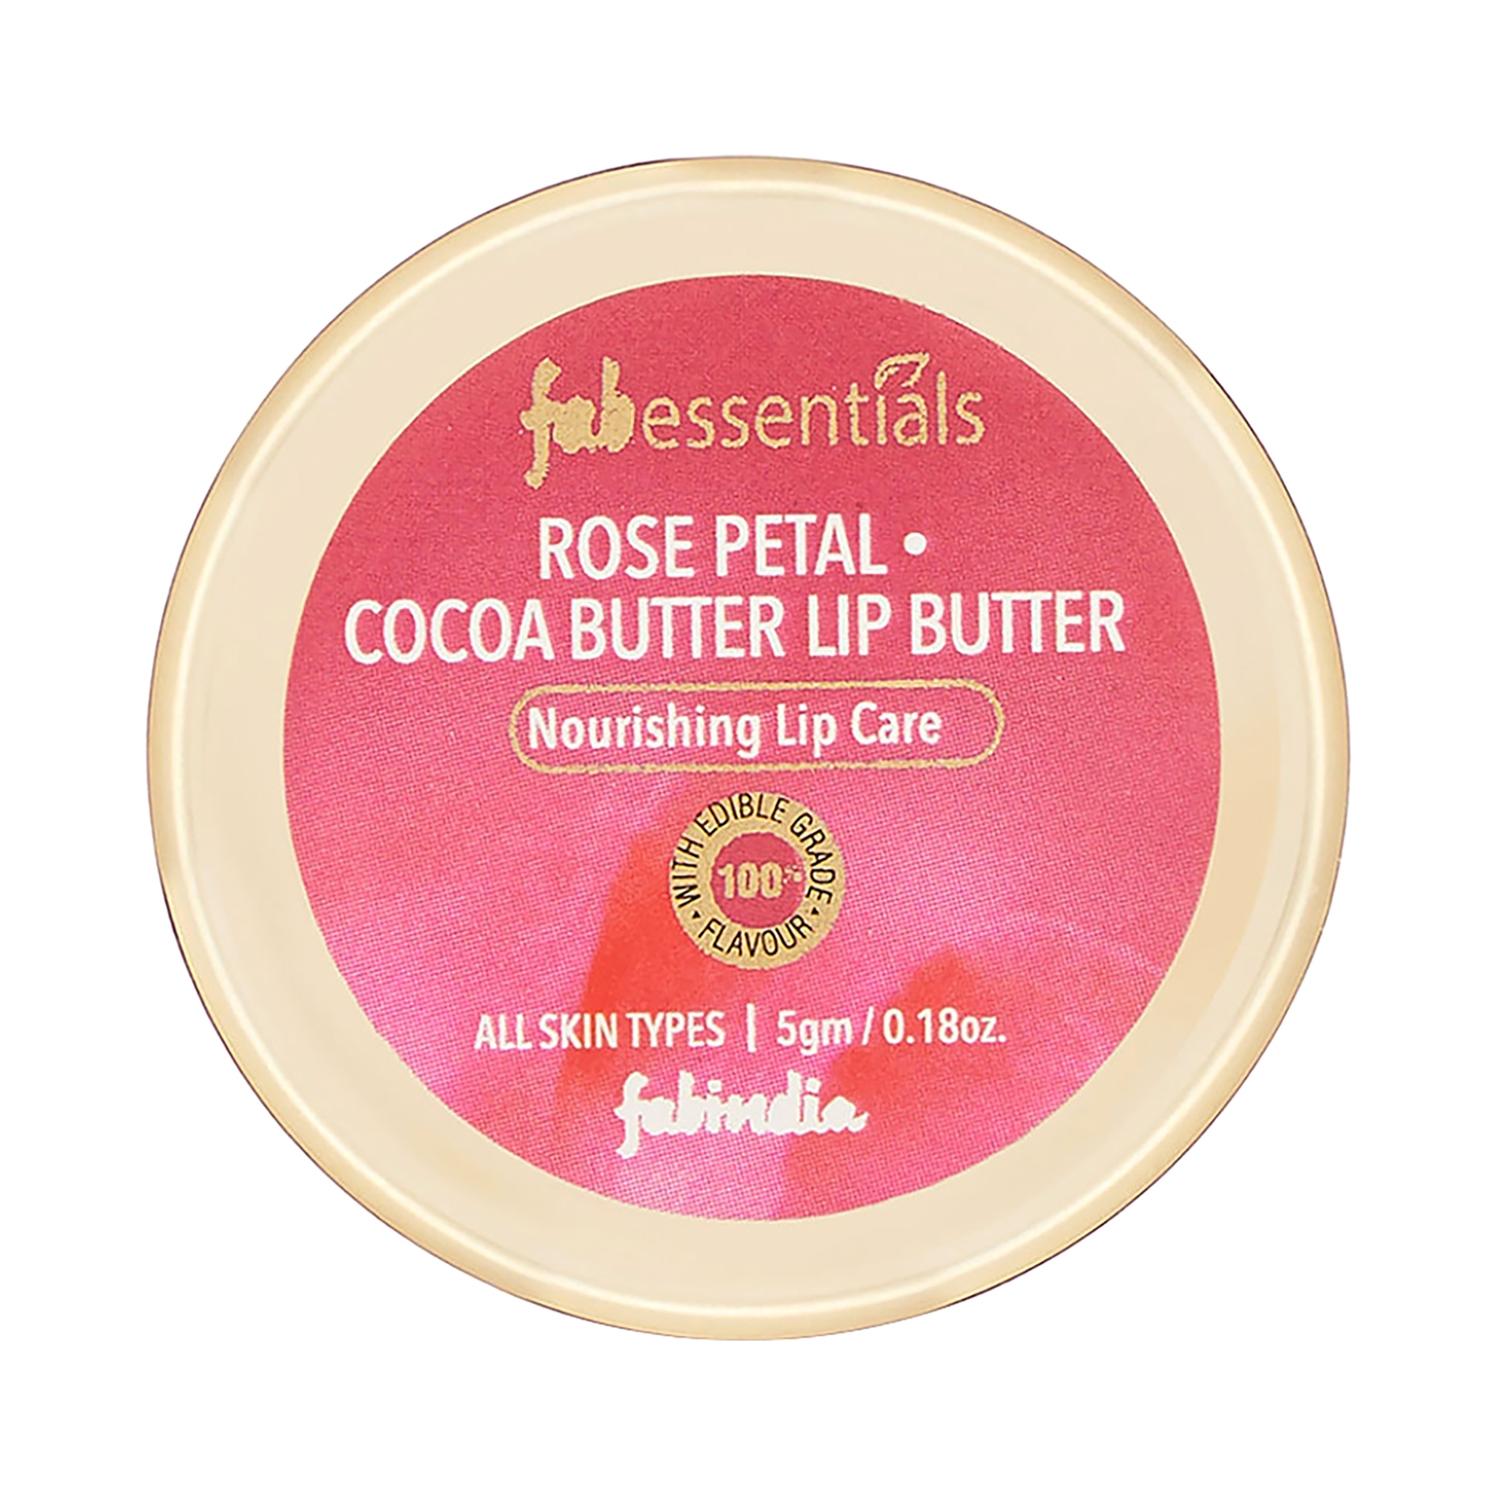 fabessentials rose petal cocoa butter lip butter (5g)